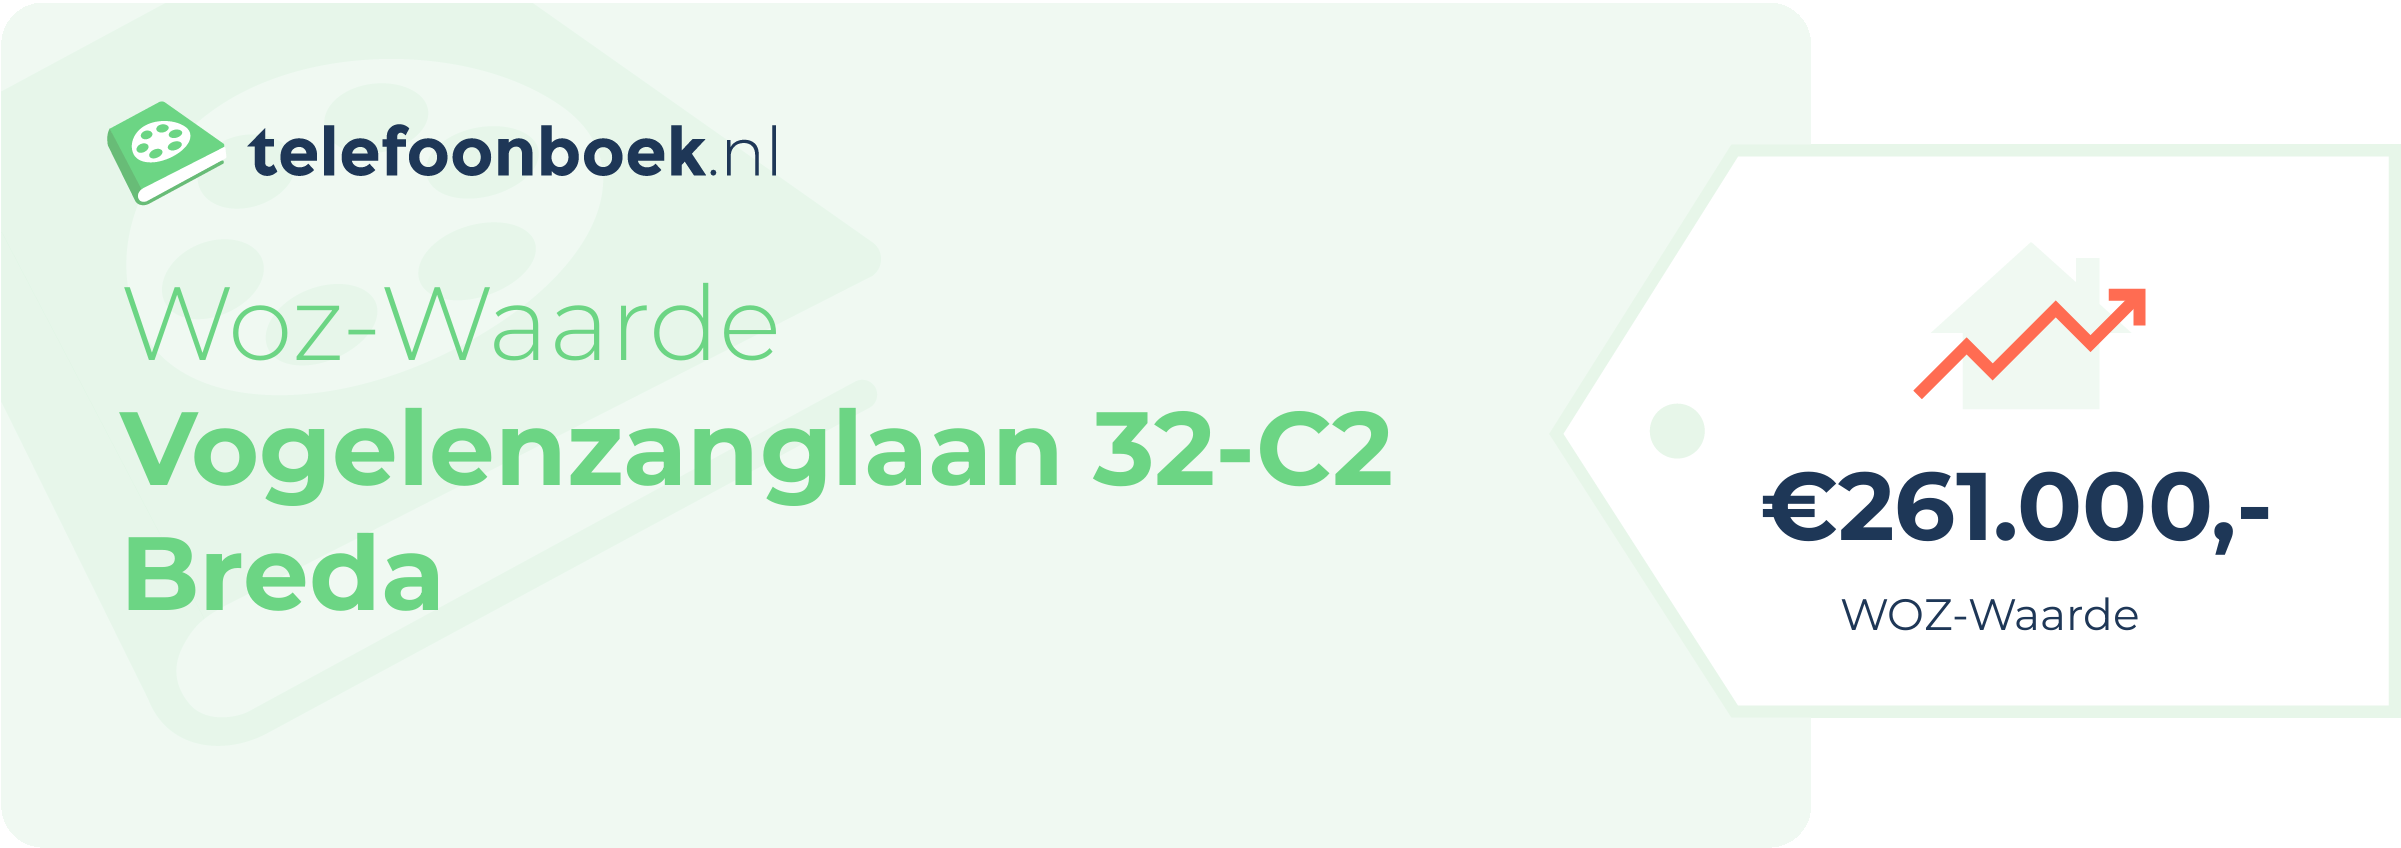 WOZ-waarde Vogelenzanglaan 32-C2 Breda